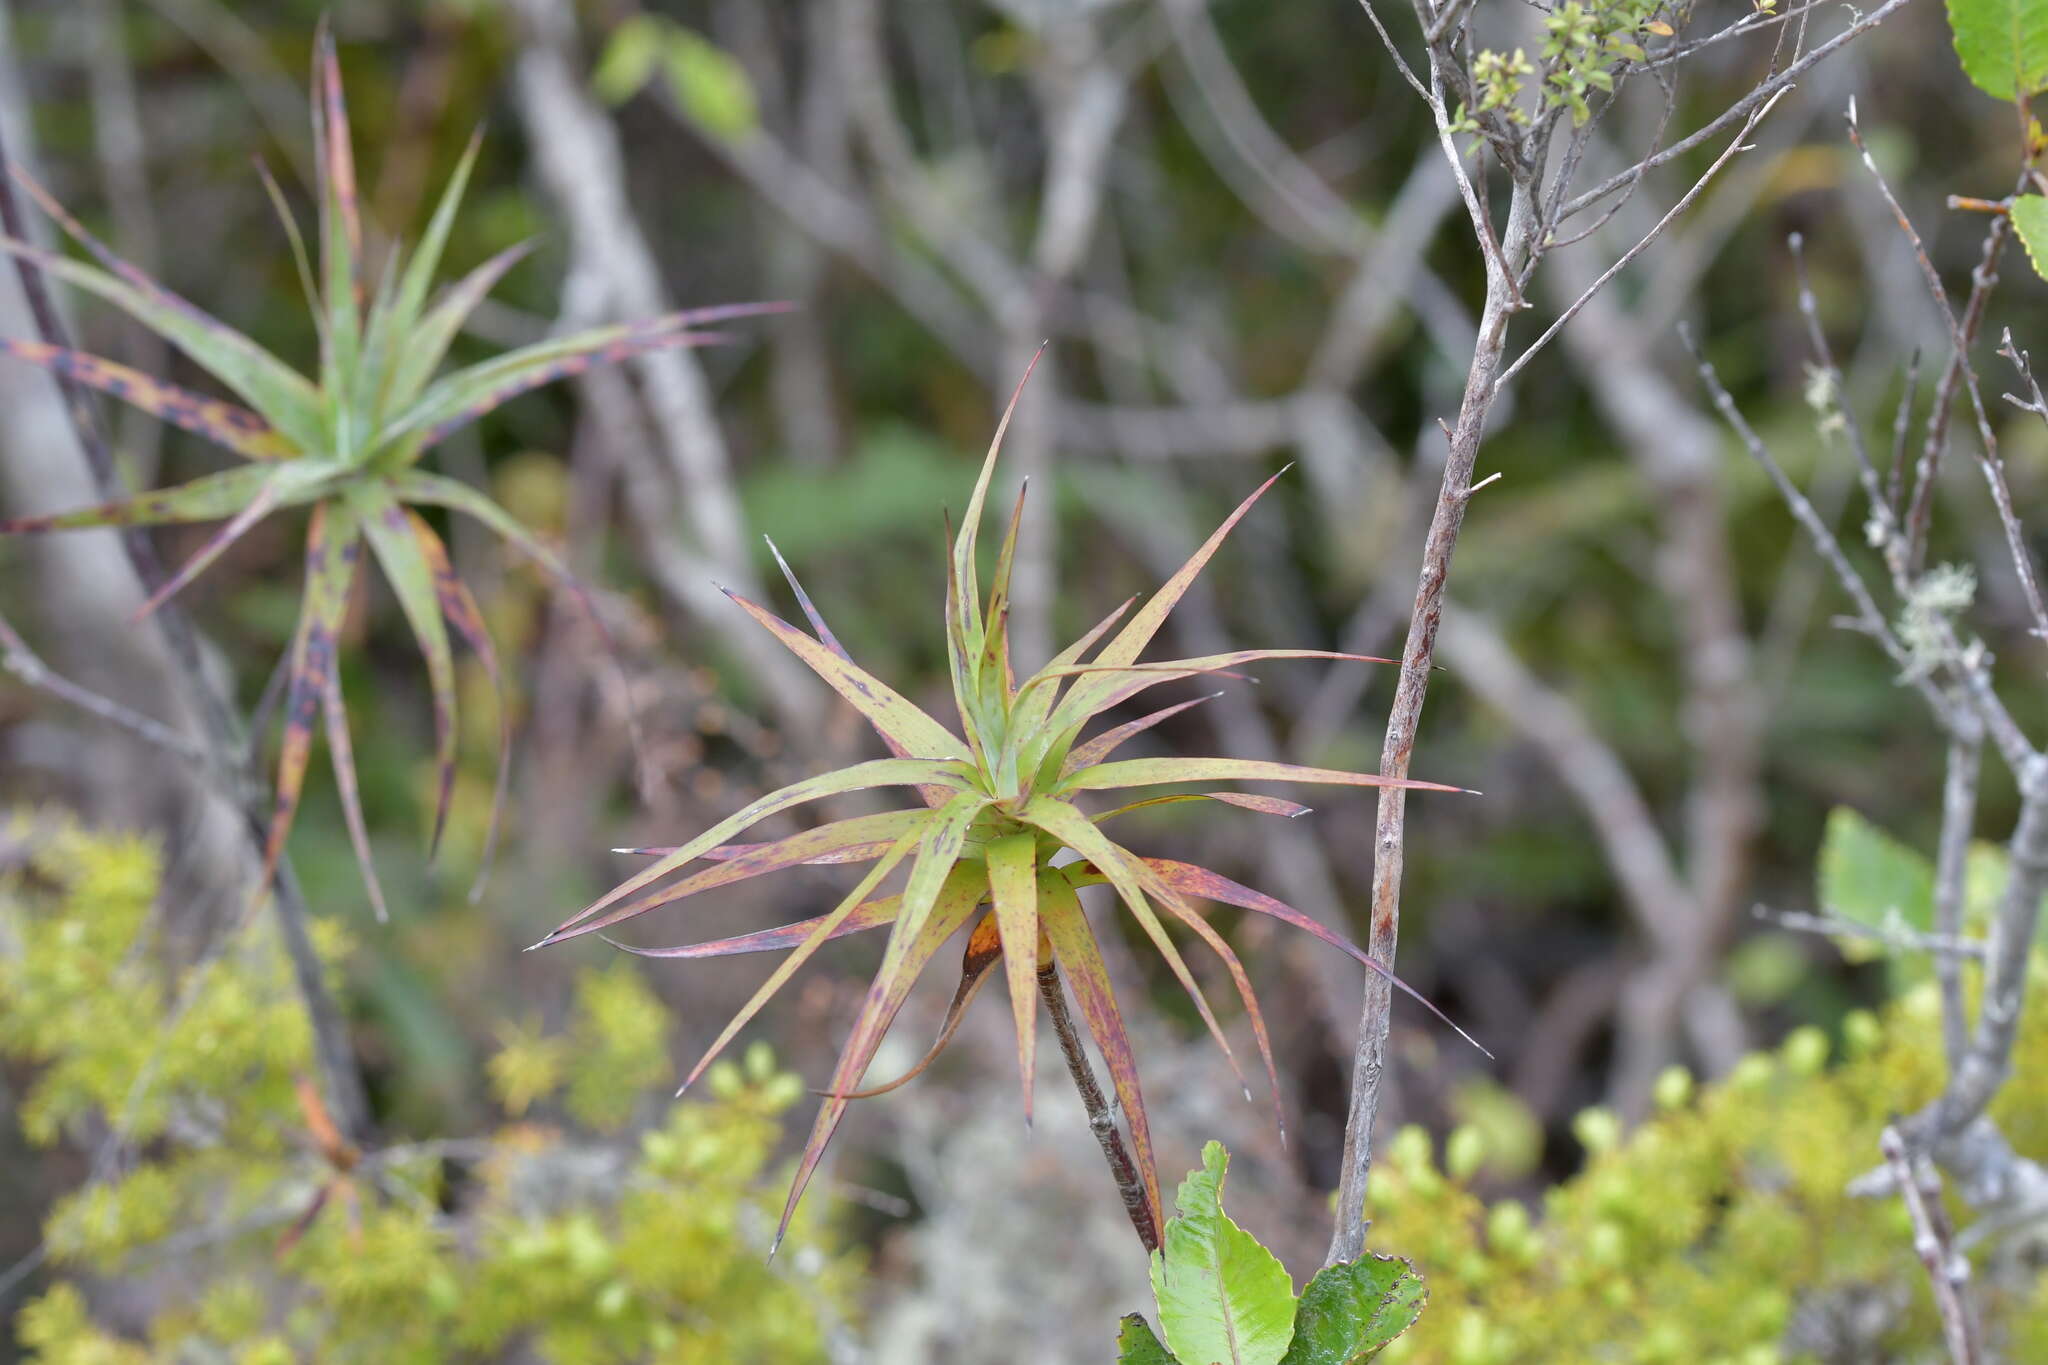 Image de Dracophyllum strictum Hook. fil.